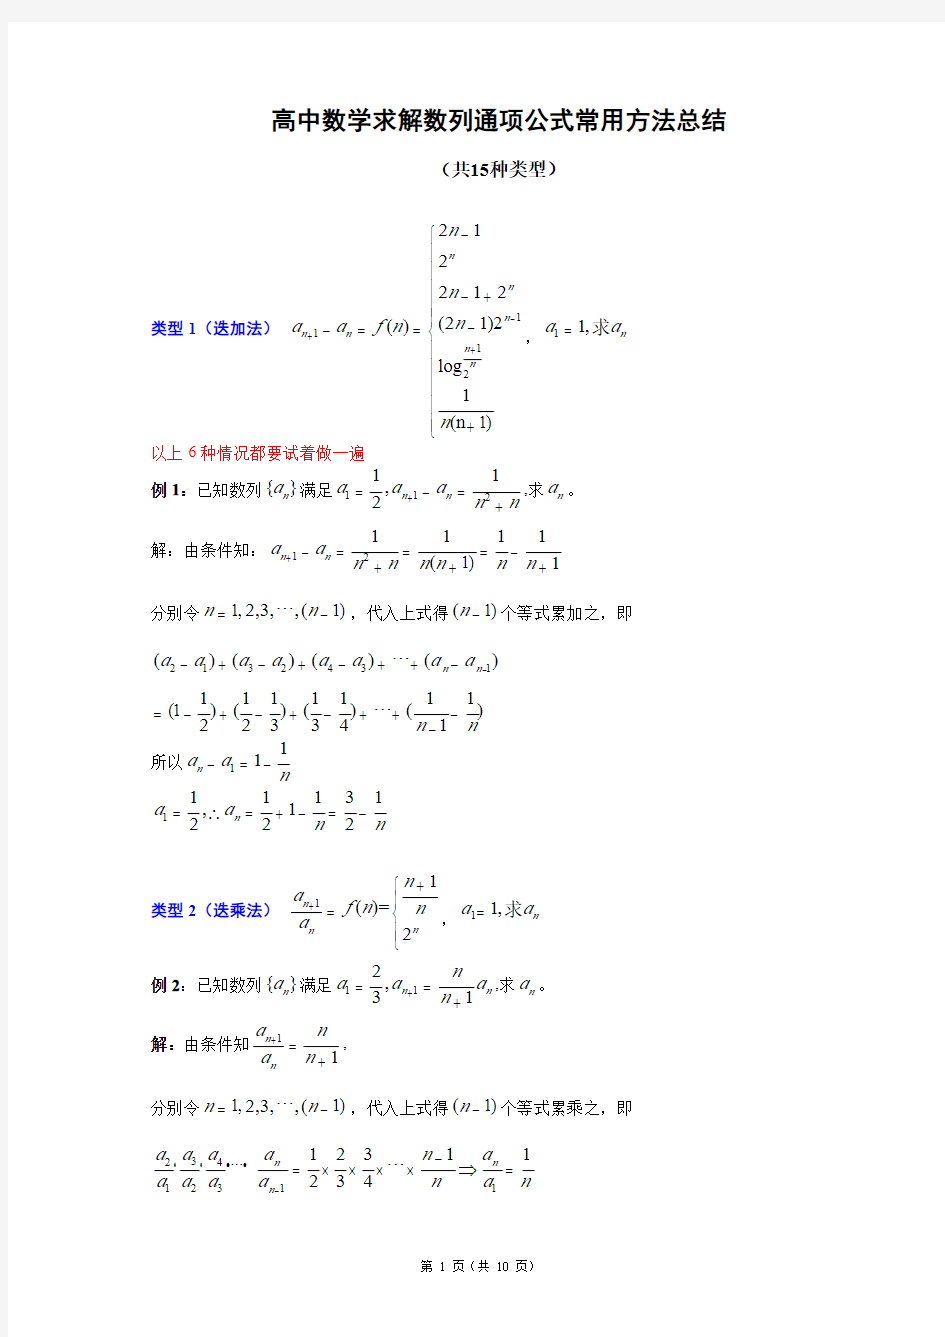 高中求数列通项公式常用方法总结